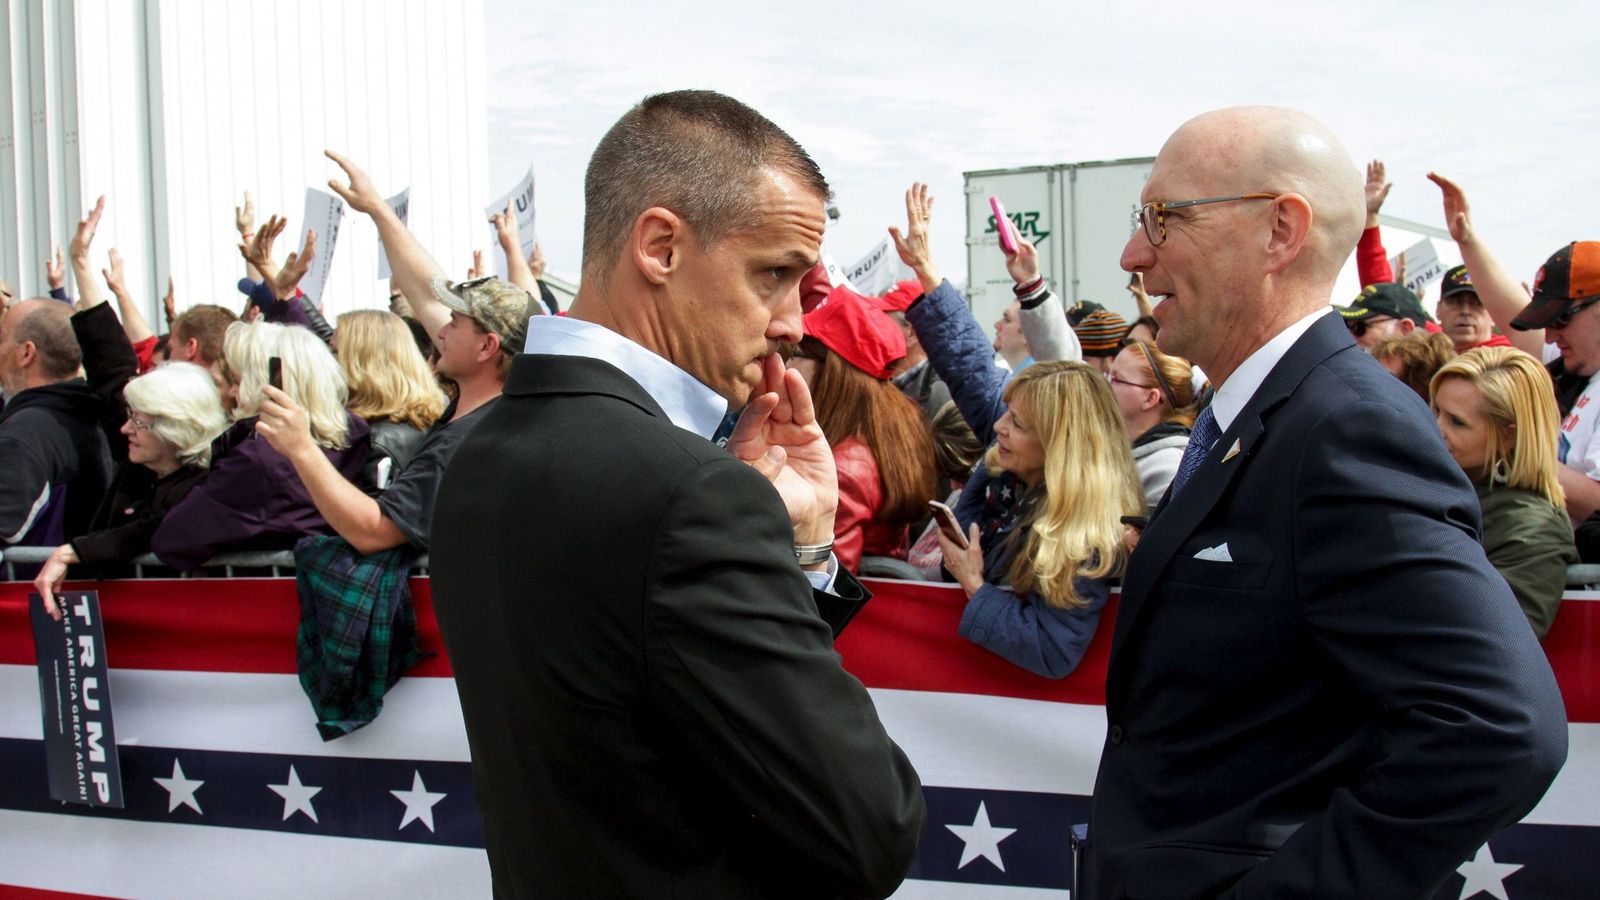 Foto: El jefe de campaña de Trump, Corey Lewandowski, a la izquierda, en un evento de campaña en el aeropuerto de Dayton, el 12 de marzo de 2016. (Reuters)